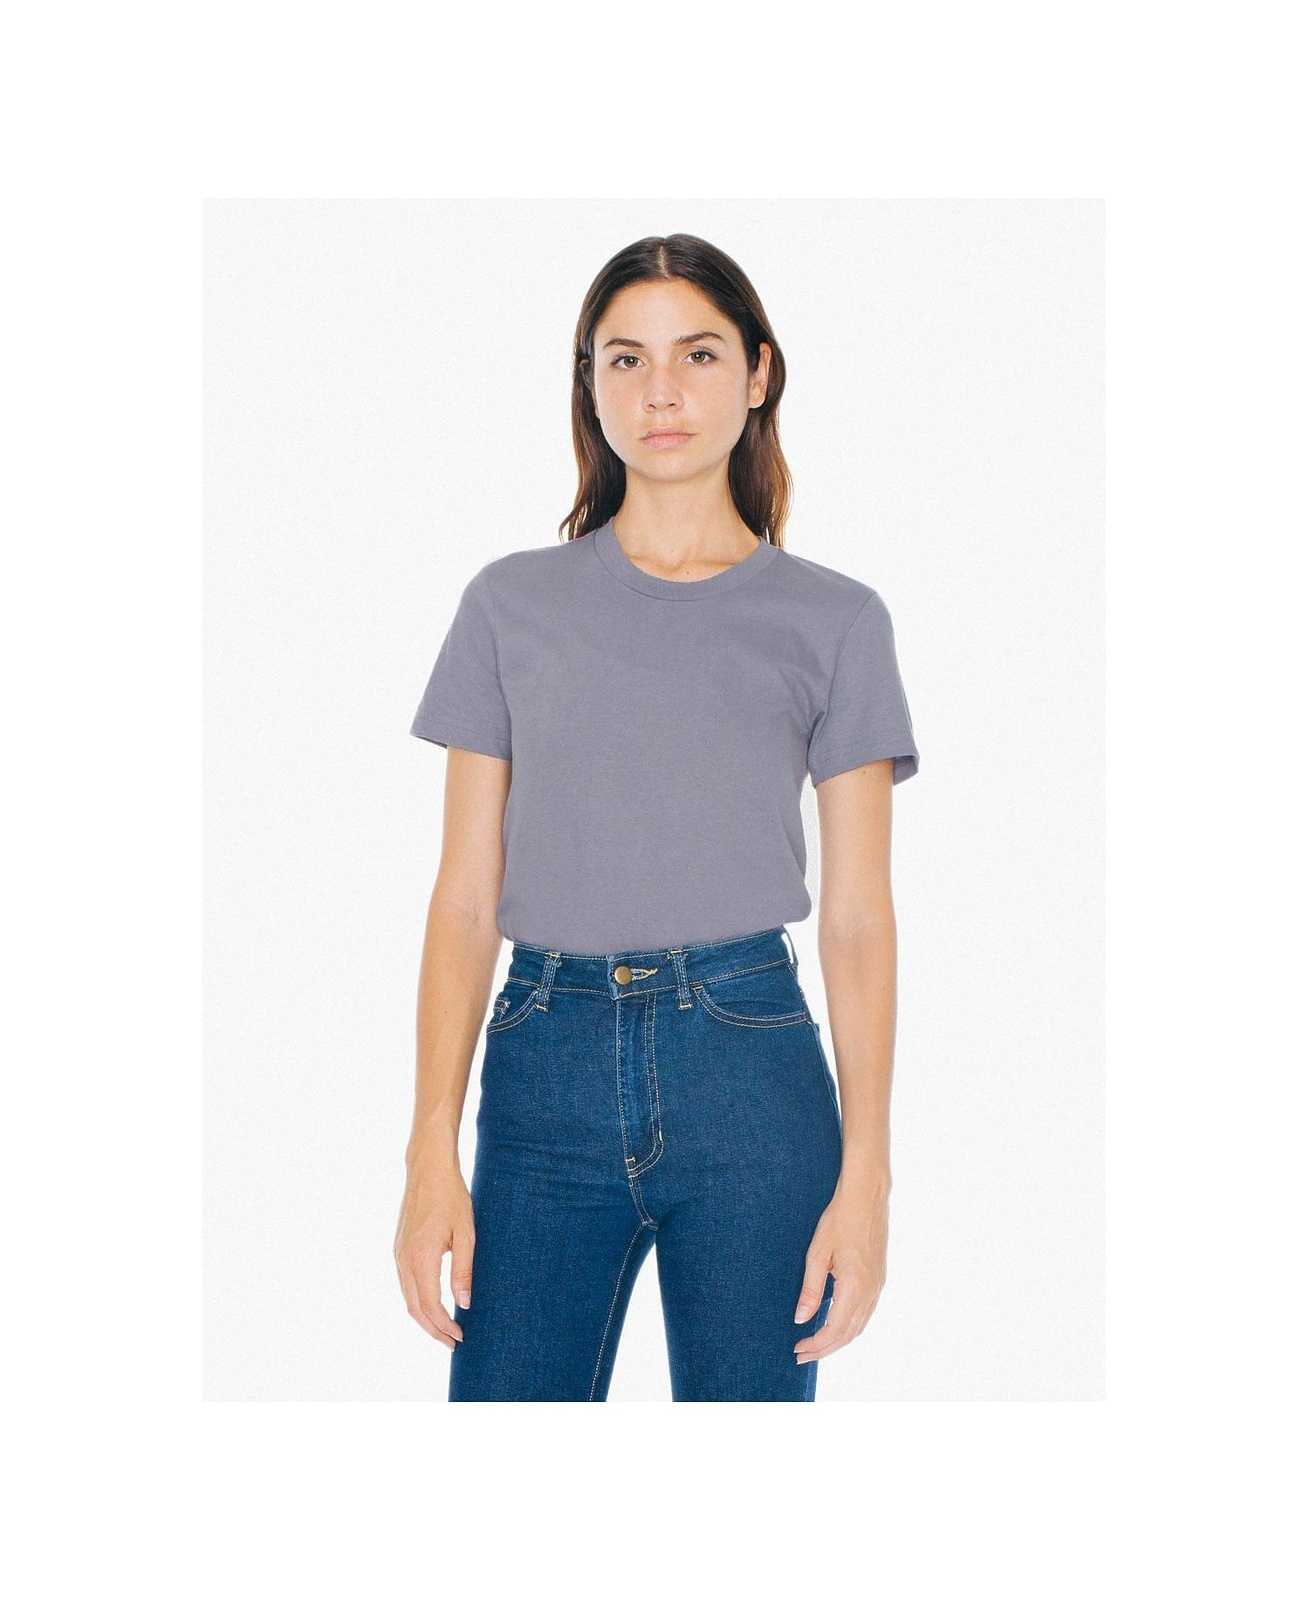 American Apparel 2102W Women's Fine Jersey T-Shirt - Slate - HIT a Double